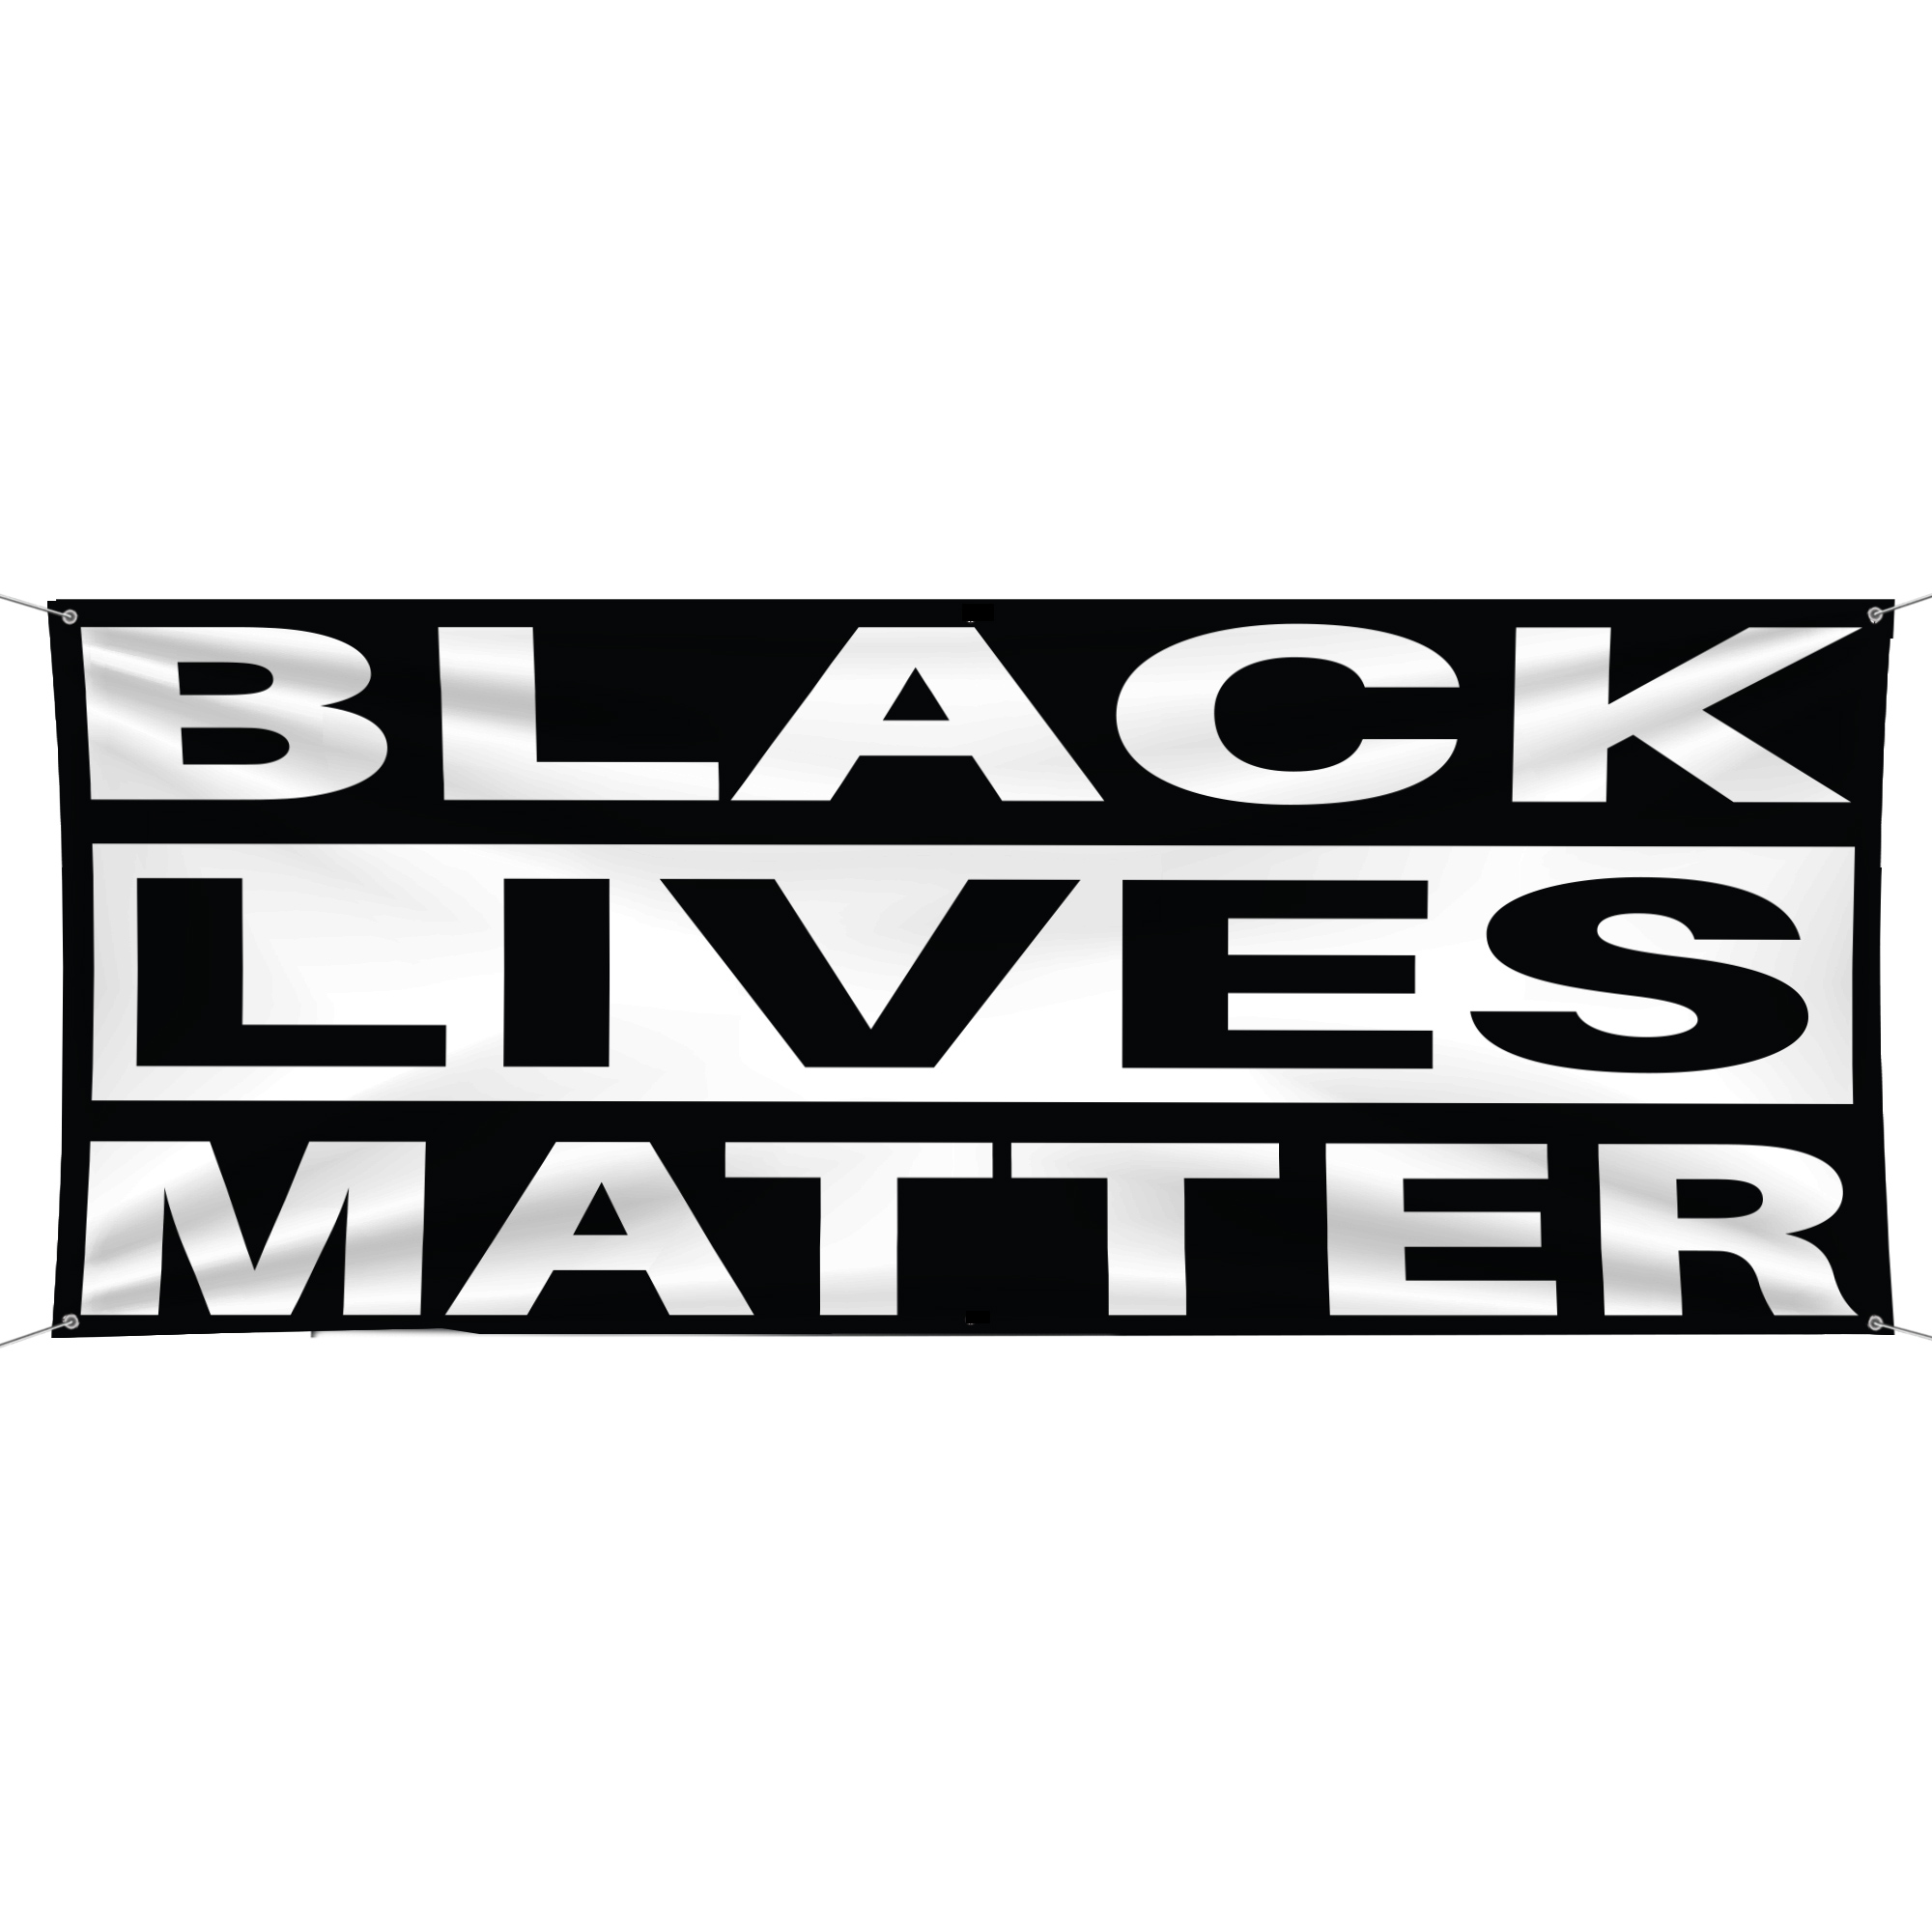 BLACK LIVES MATTER - Vinyl Banner